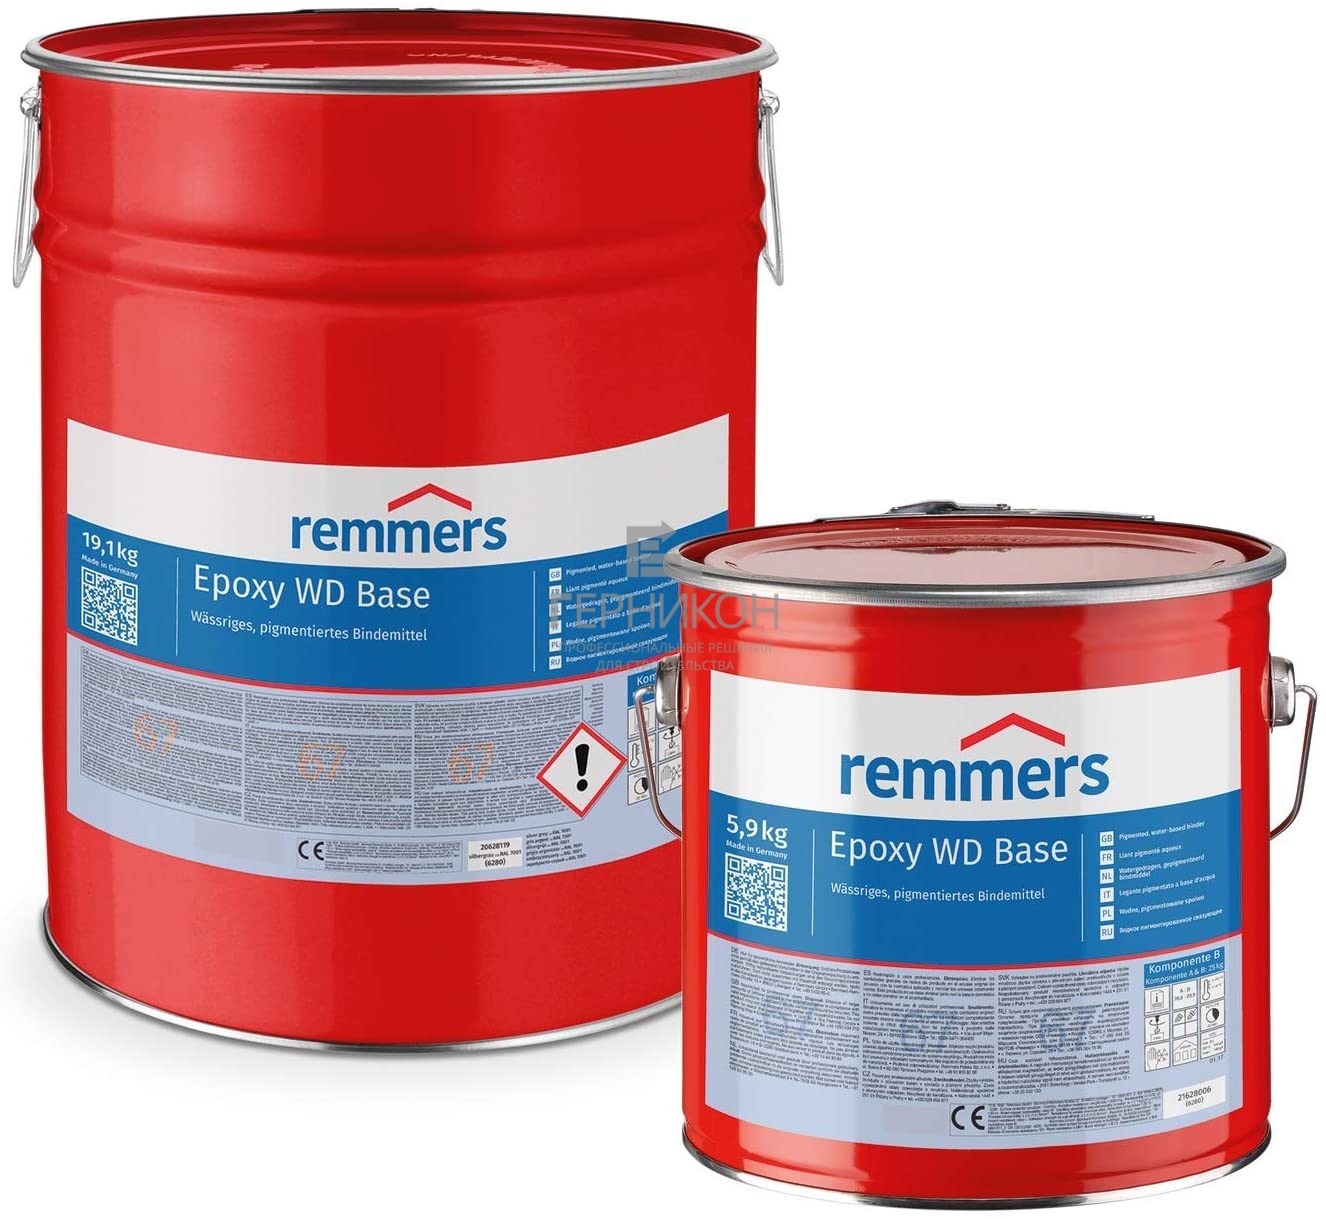 remmers epoxy wd base (комп.a + комп.в) 25кг (реммерс эпокси вд базе(комп.a + комп.в)25кг)